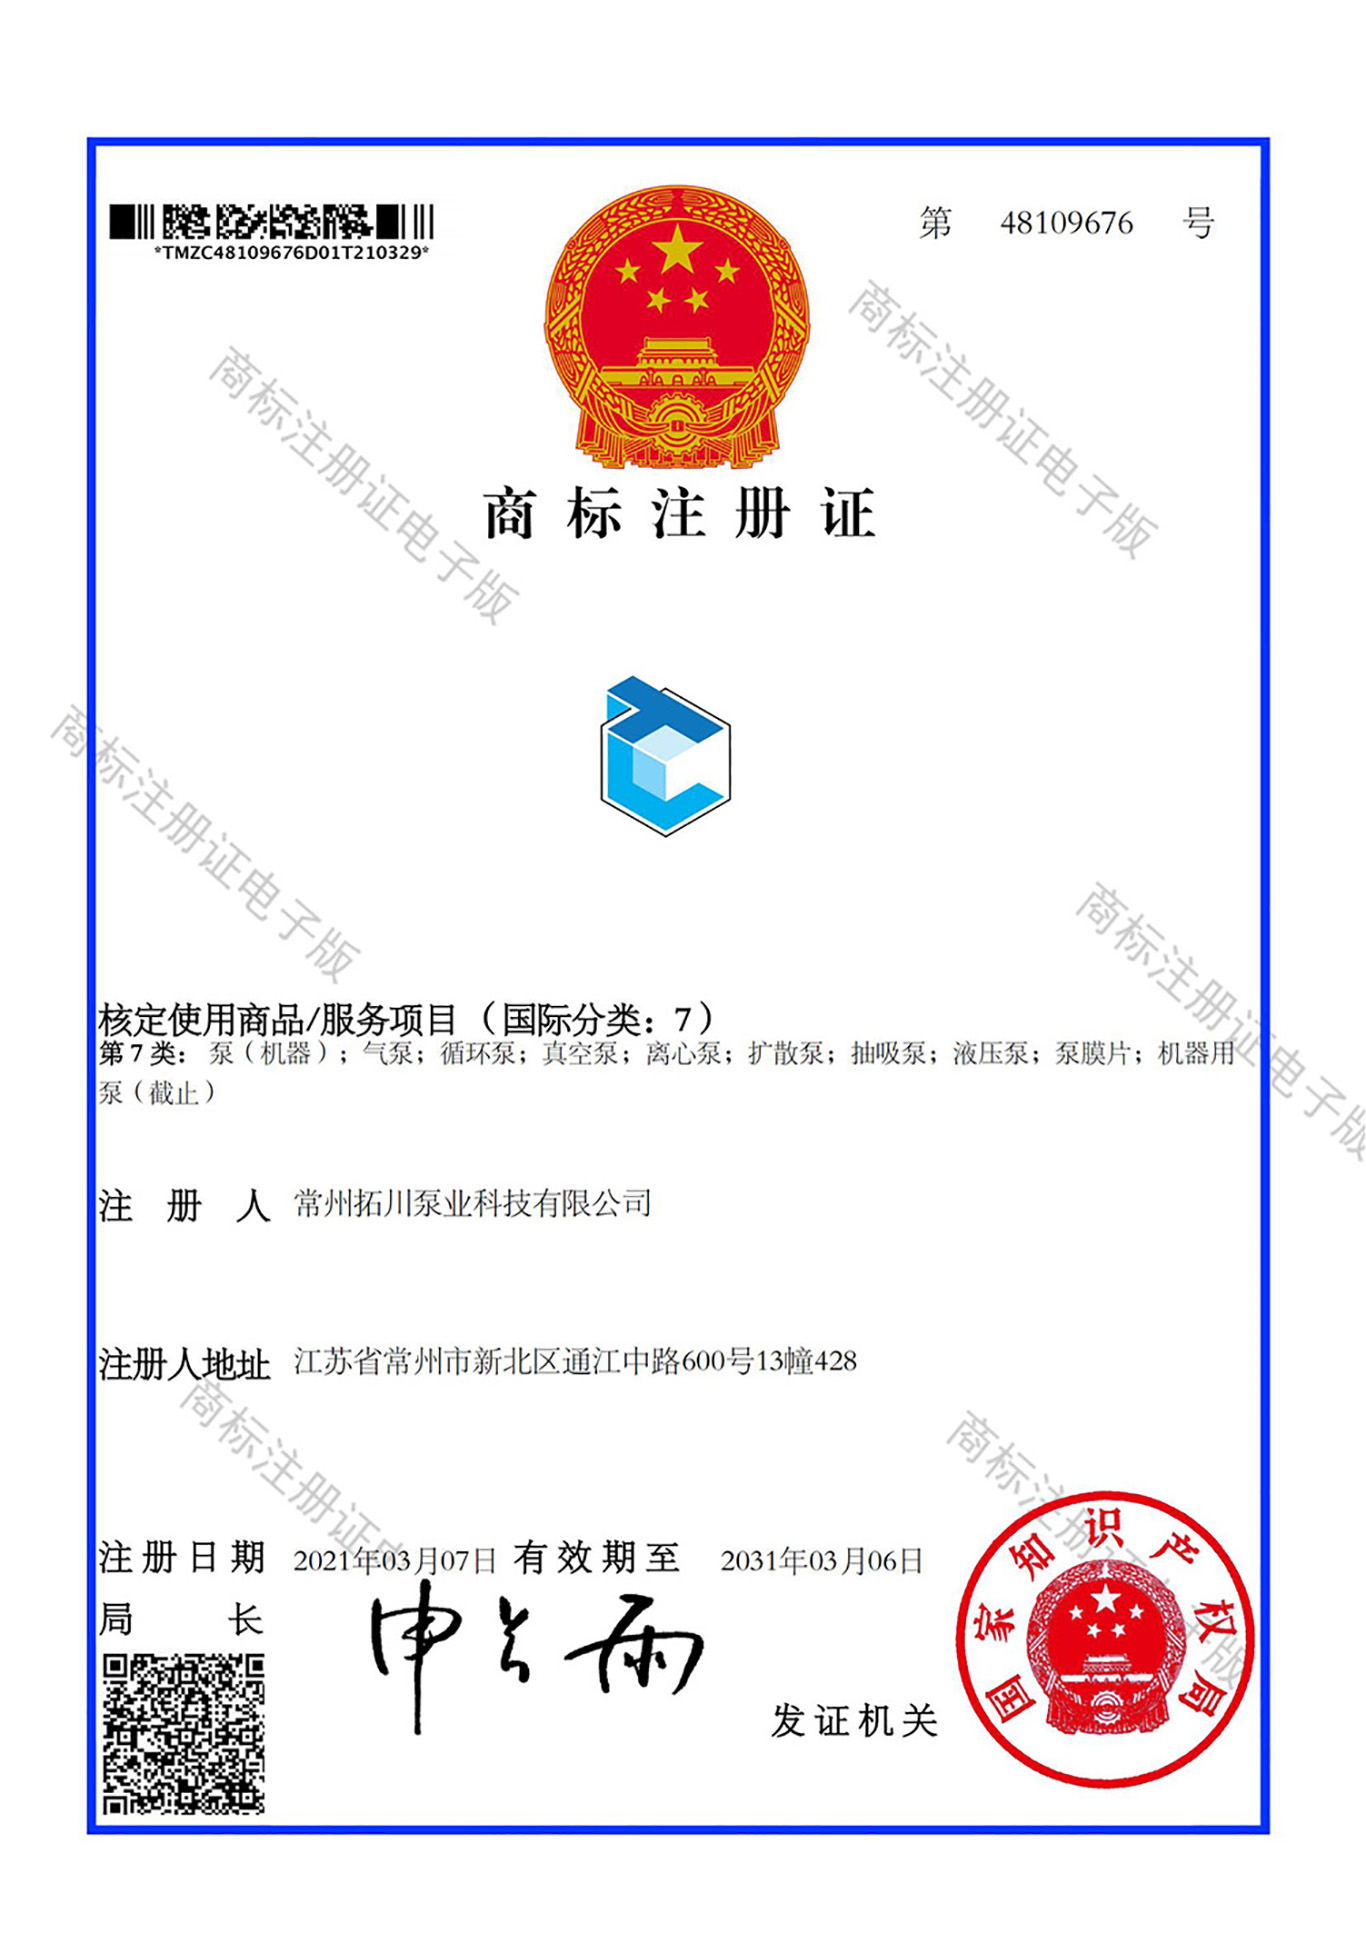 拓川泵业科技 LOGO 7类 商标证(1)_00.jpg